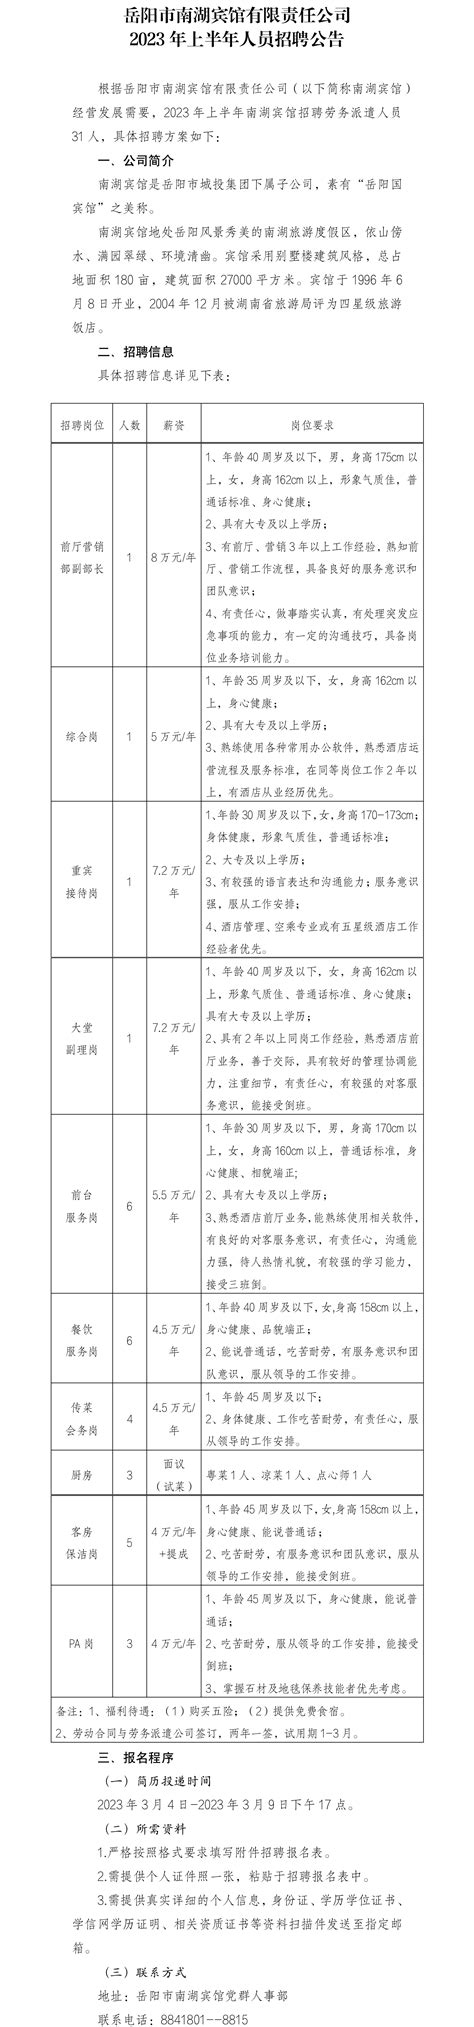 岳阳市南湖宾馆有限责任公司2023年上半年人员招聘公告 - 人才招聘 - 岳阳市城投集团